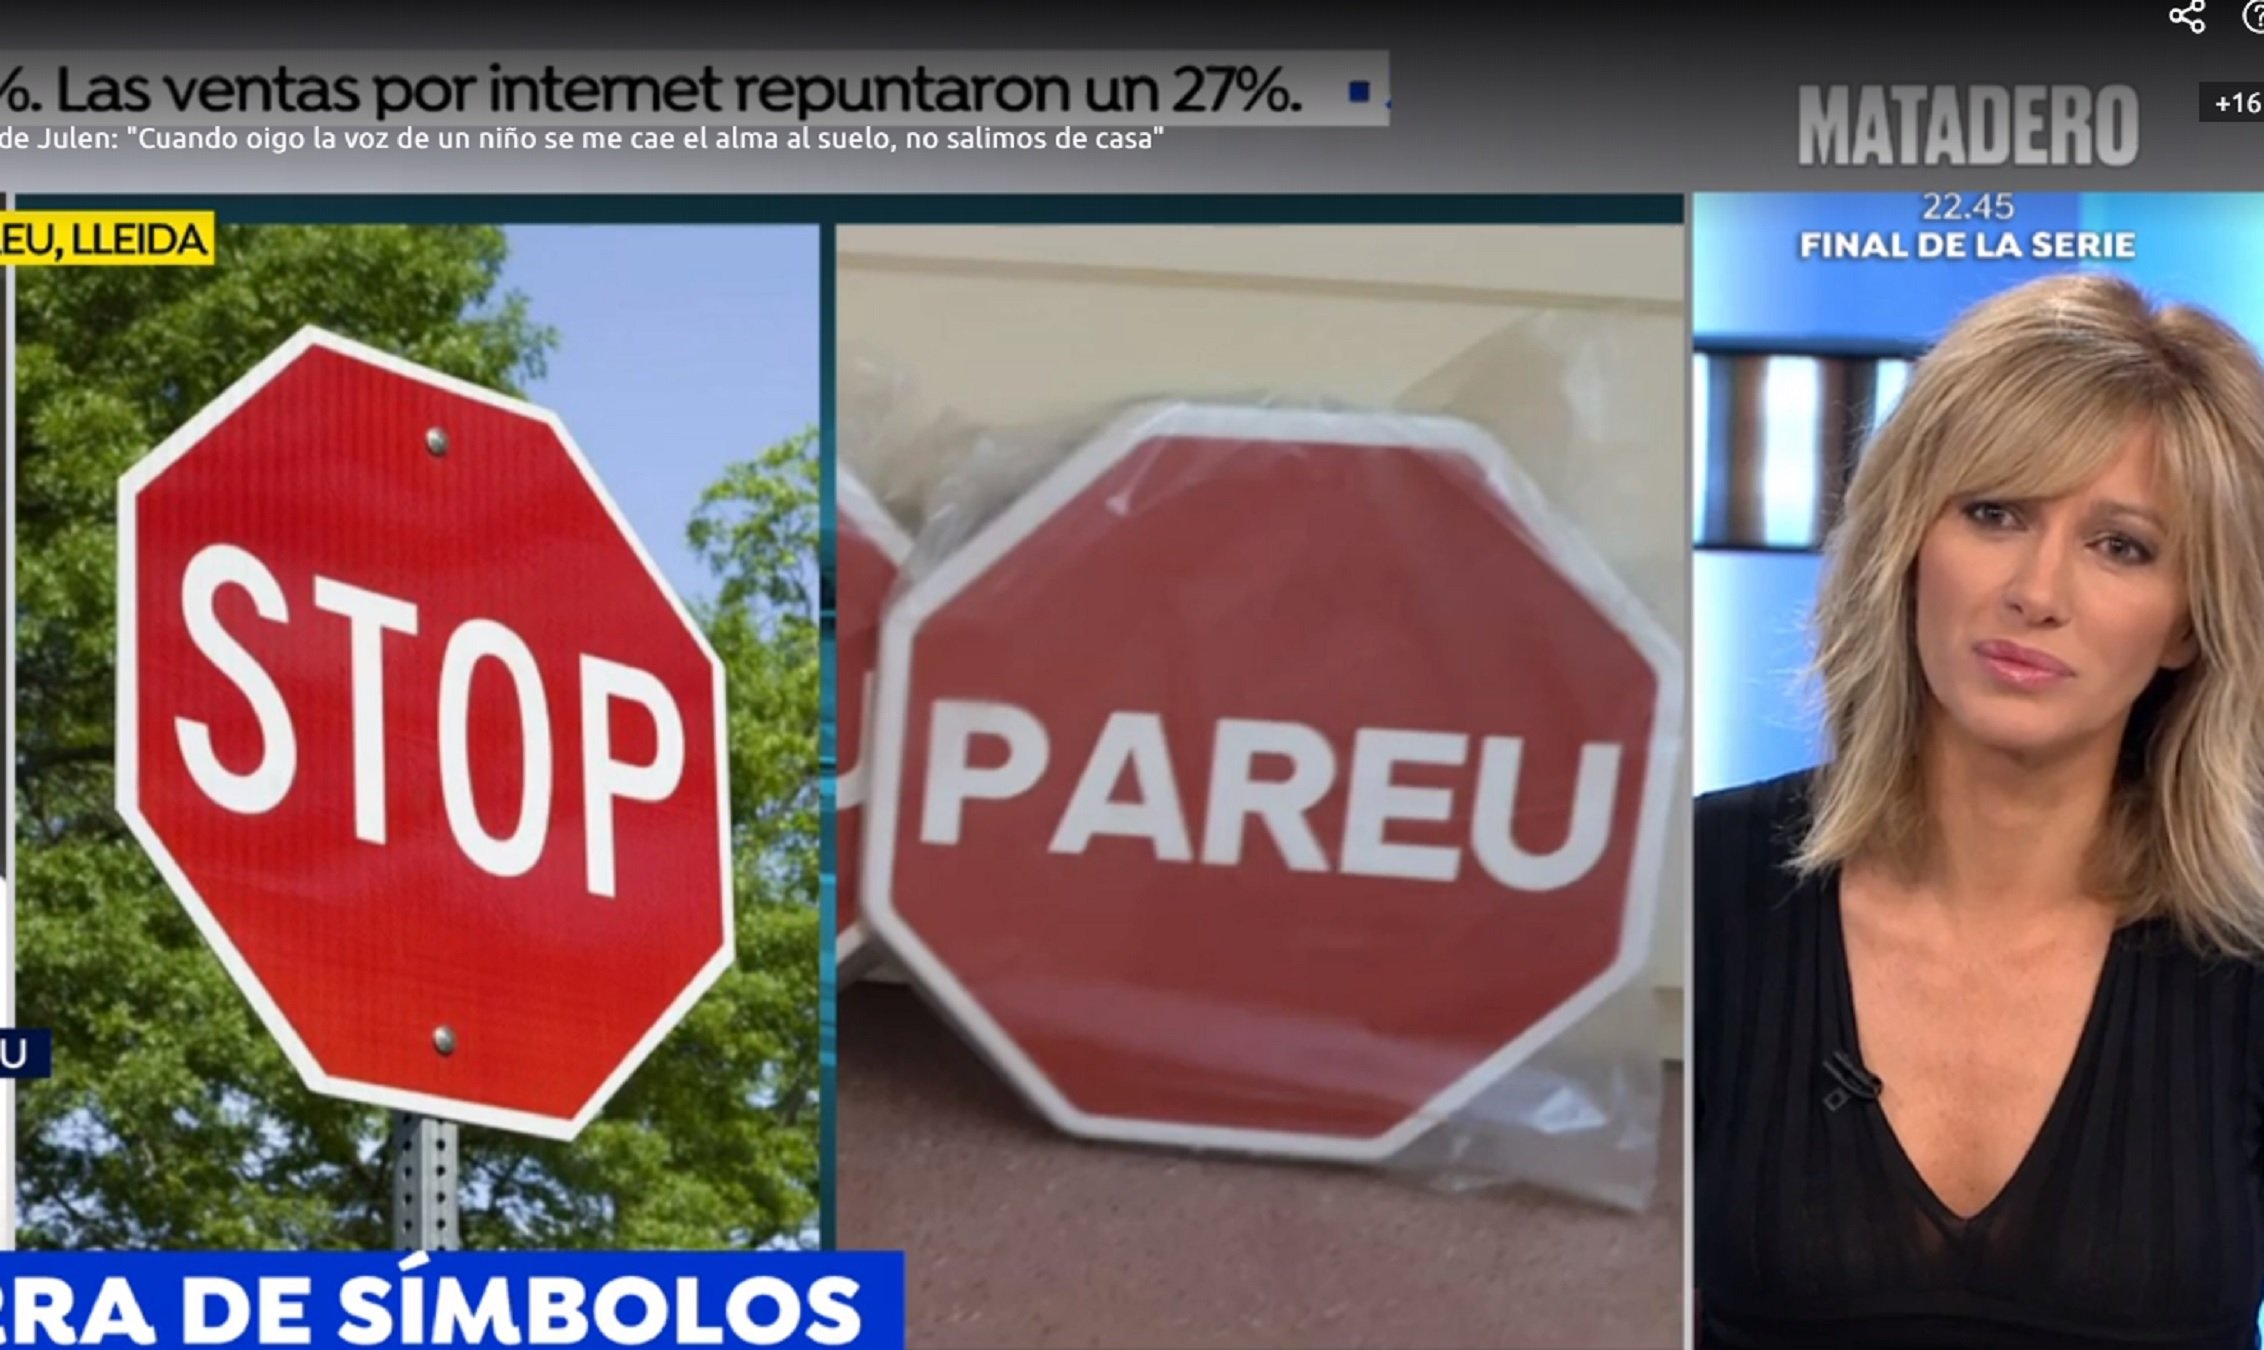 Guerra de Antena 3 contra un pueblo leridano con señales de "pareu" y no "Stop"